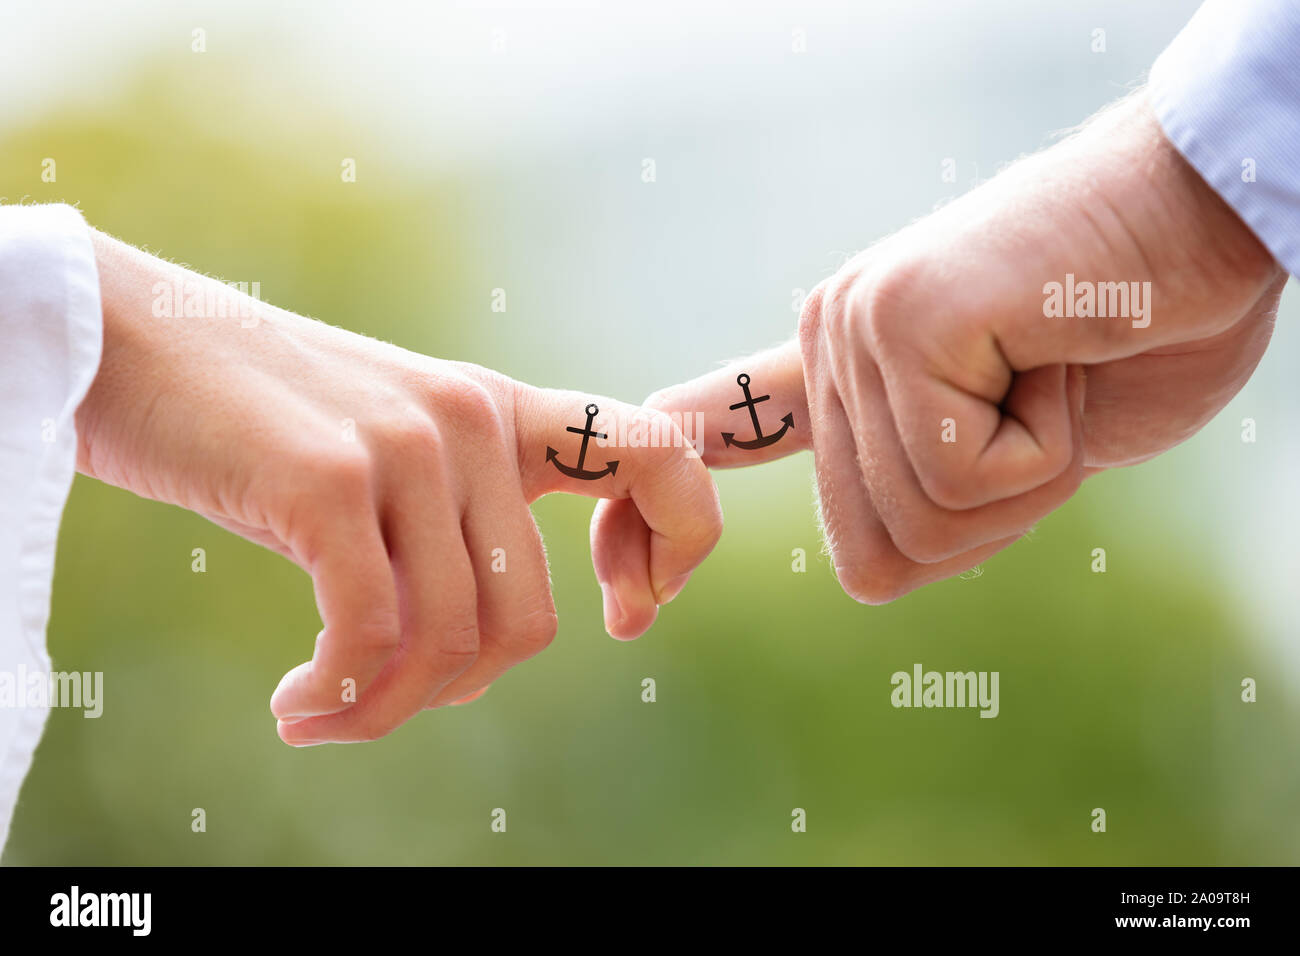 Liebende Paar hält jedes anderen Finger mit schwarzem Anker Zeichen Tattoo  gegen verschwommenen Hintergrund Stockfotografie - Alamy